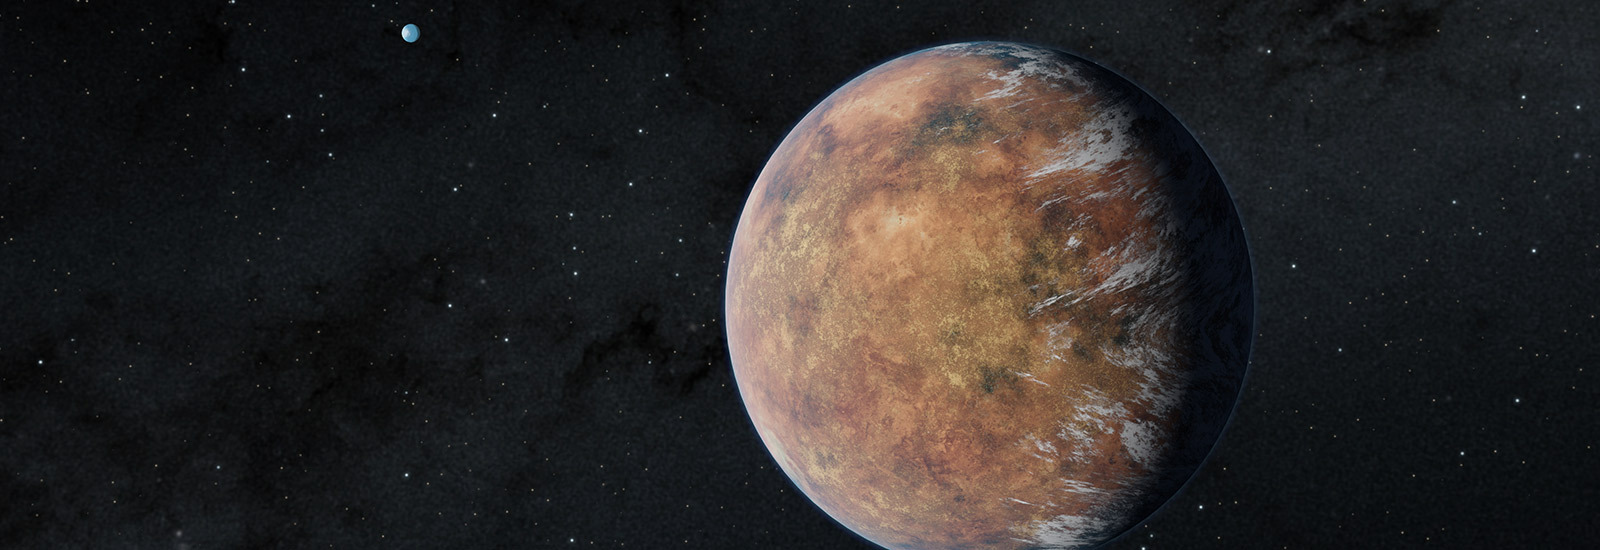 Ilustración de exoplaneta TOI 700 e. Créditos: NASA/JPL-Caltech/Robert Hurt